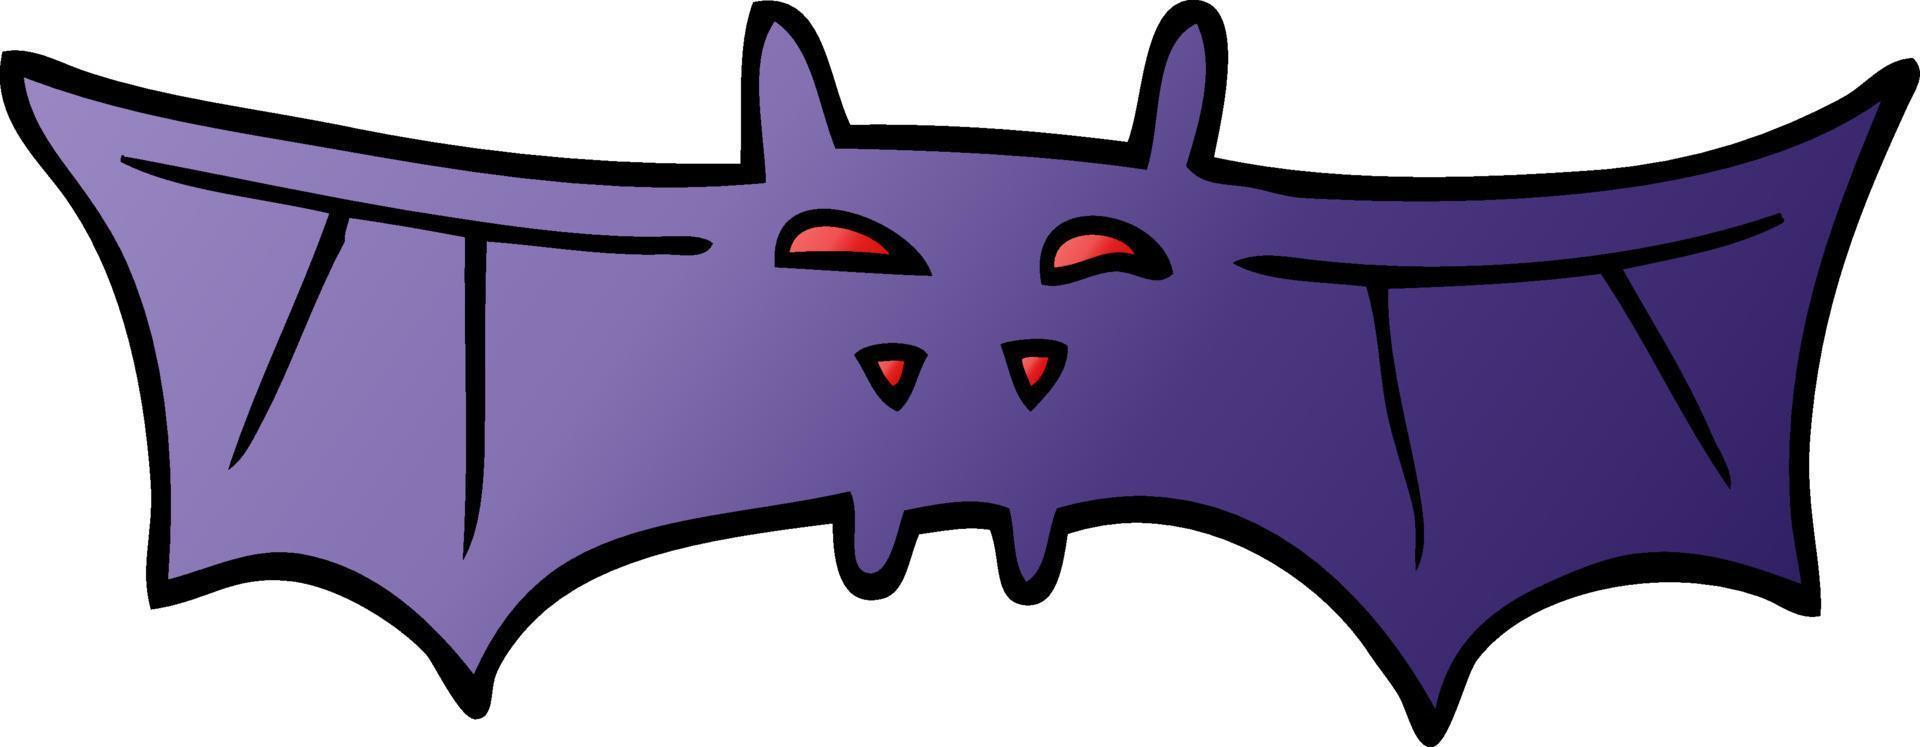 cartoon doodle halloween bat vector